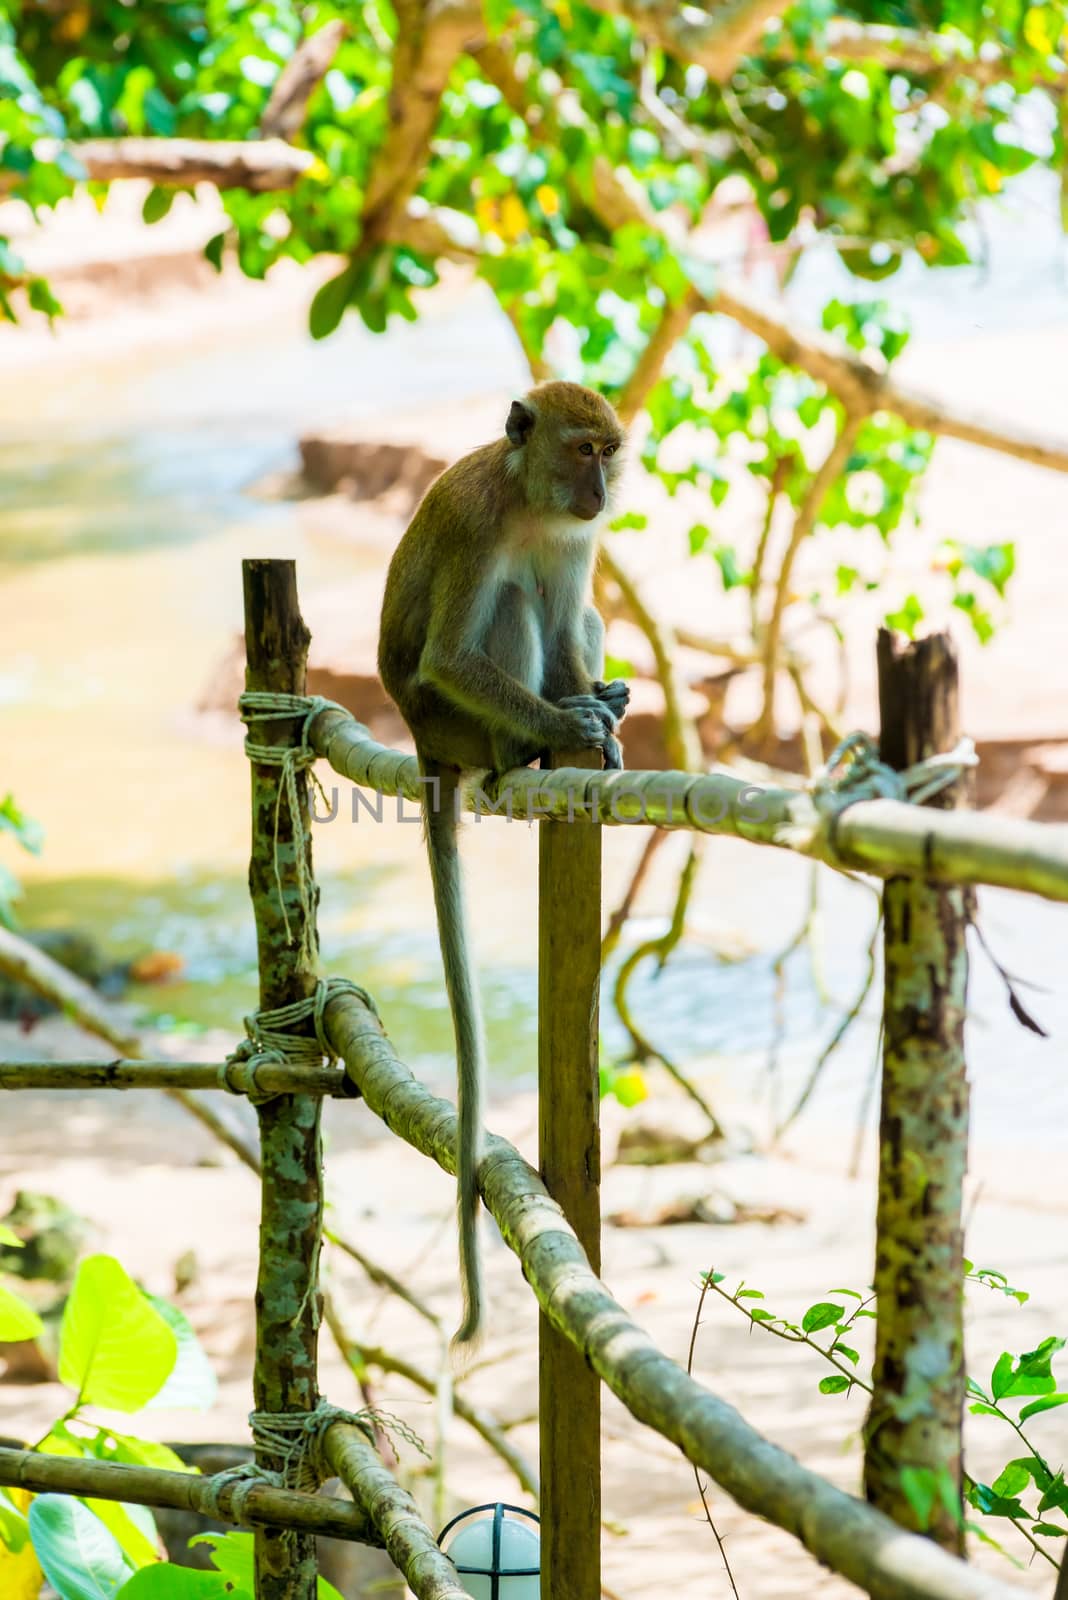 Thailand, a monkey sits on a fence near the beach